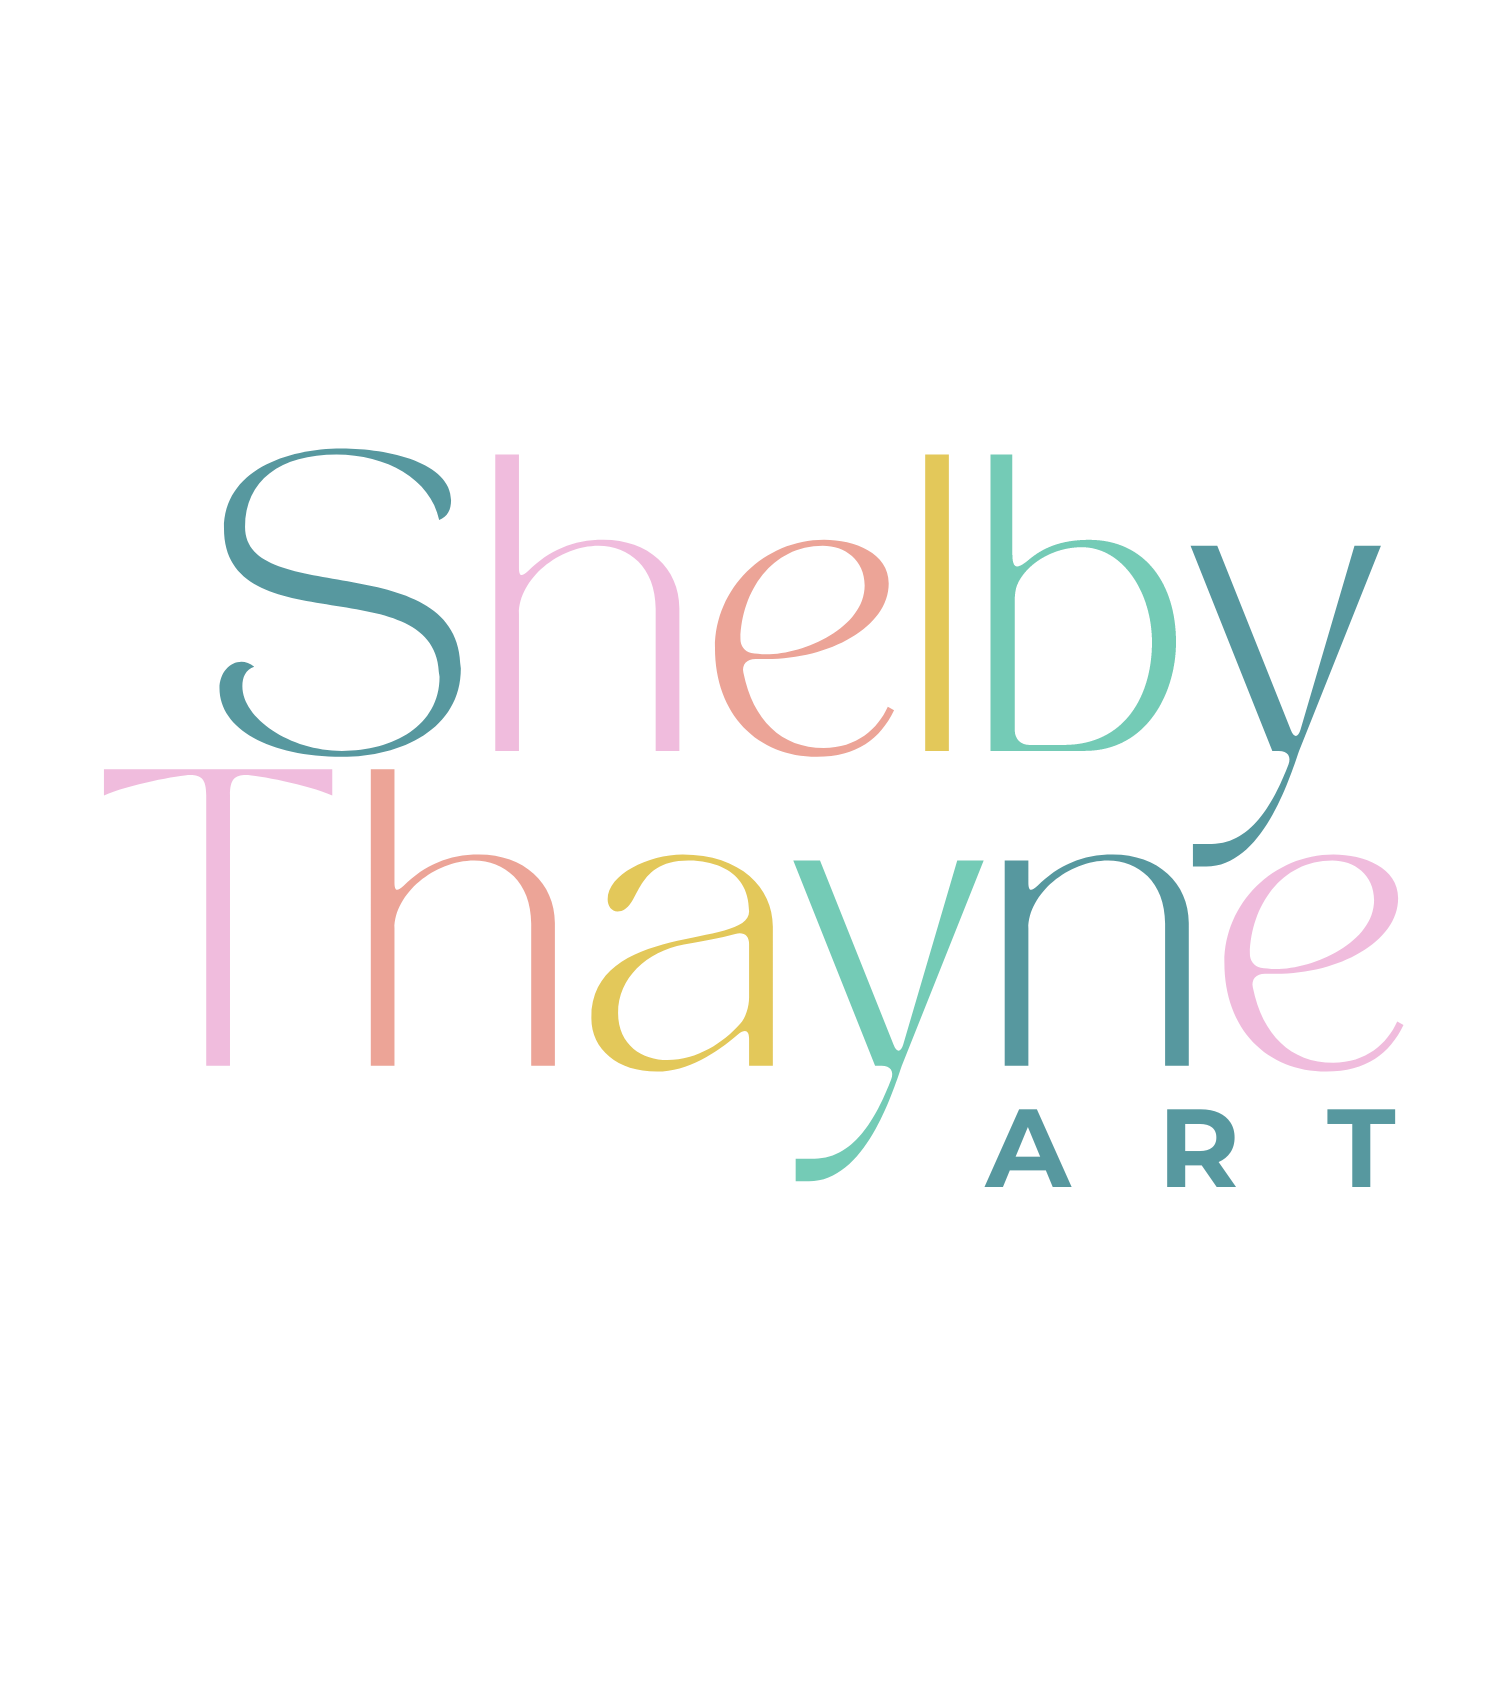 Shelby Thayne Art